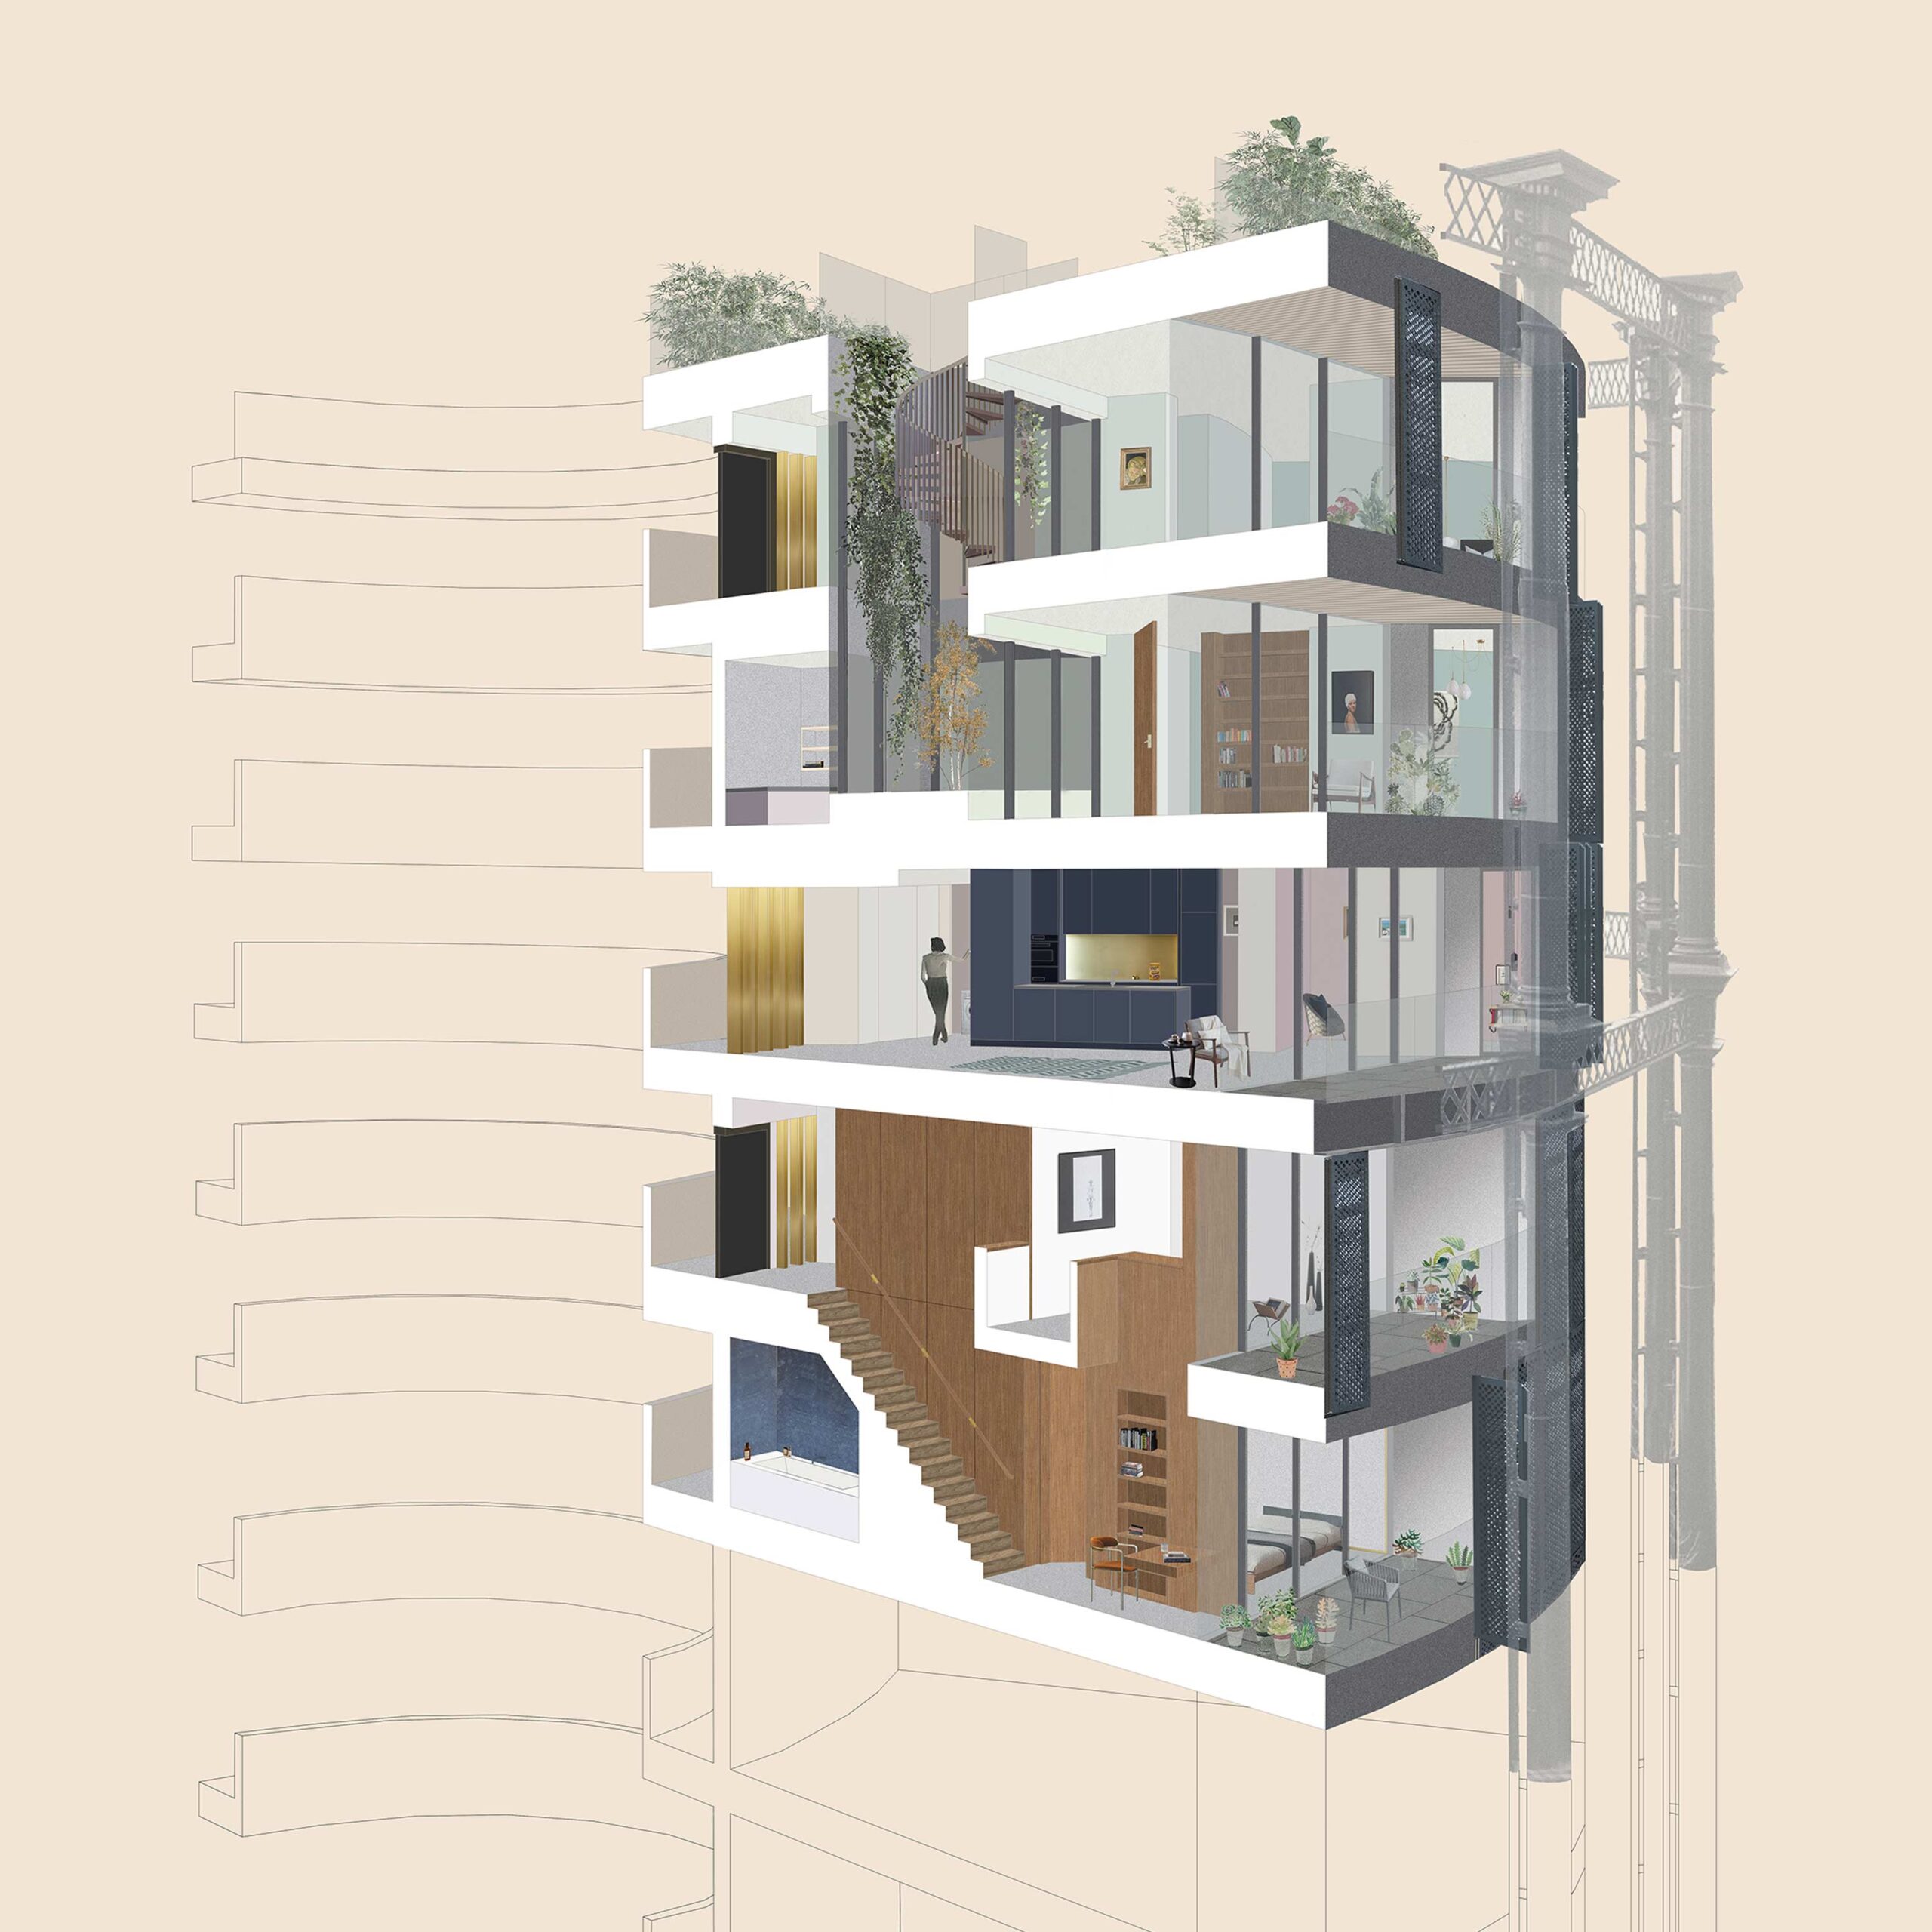 Schnittdarstellung der Teilung zwischen ein- und zweigeschossigen Apartments.